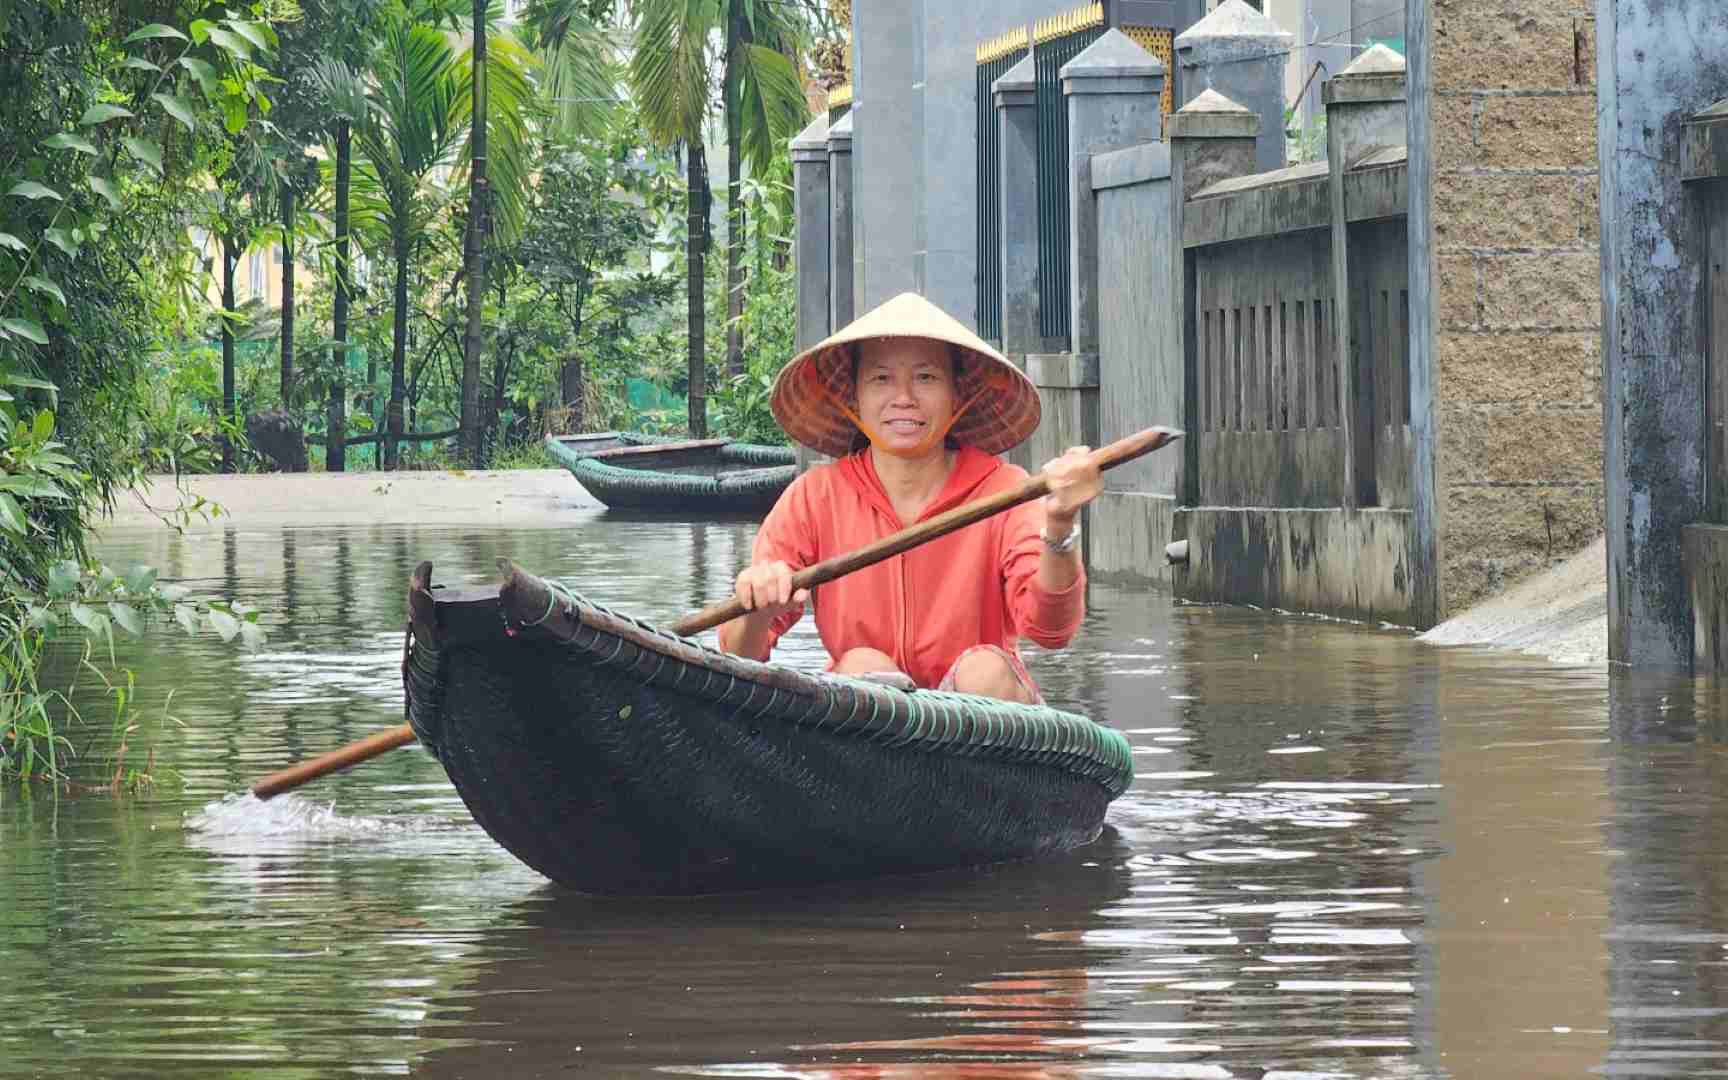 Cái làng thấp trũng nhất ở Thừa Thiên Huế, ngan, vịt bơi đầy sân, gà "chạy" lên gác, đường xóm thành sông